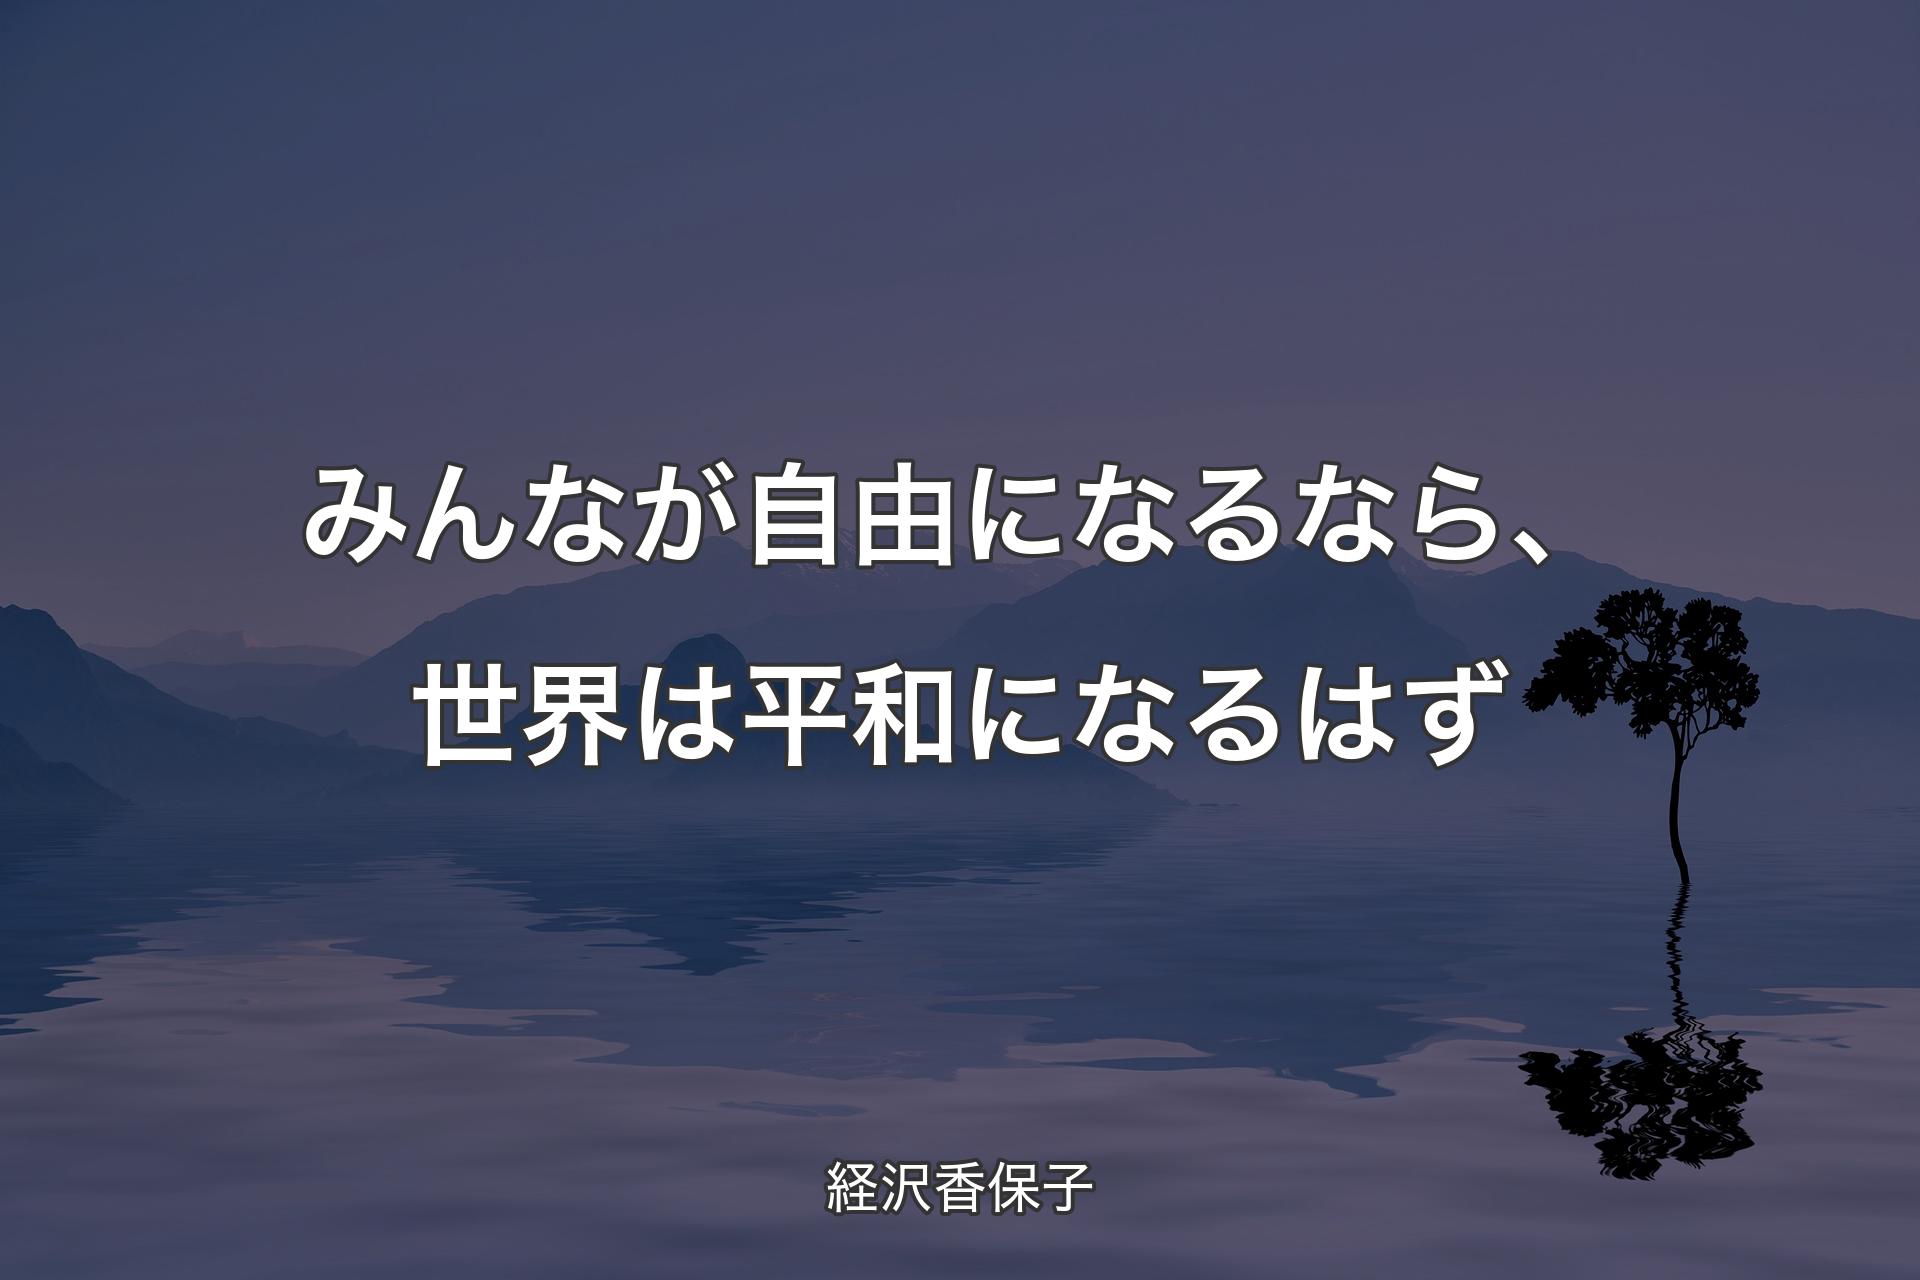 【背景4】みんなが自由になるなら、世界は平和になるはず - 経沢香保子